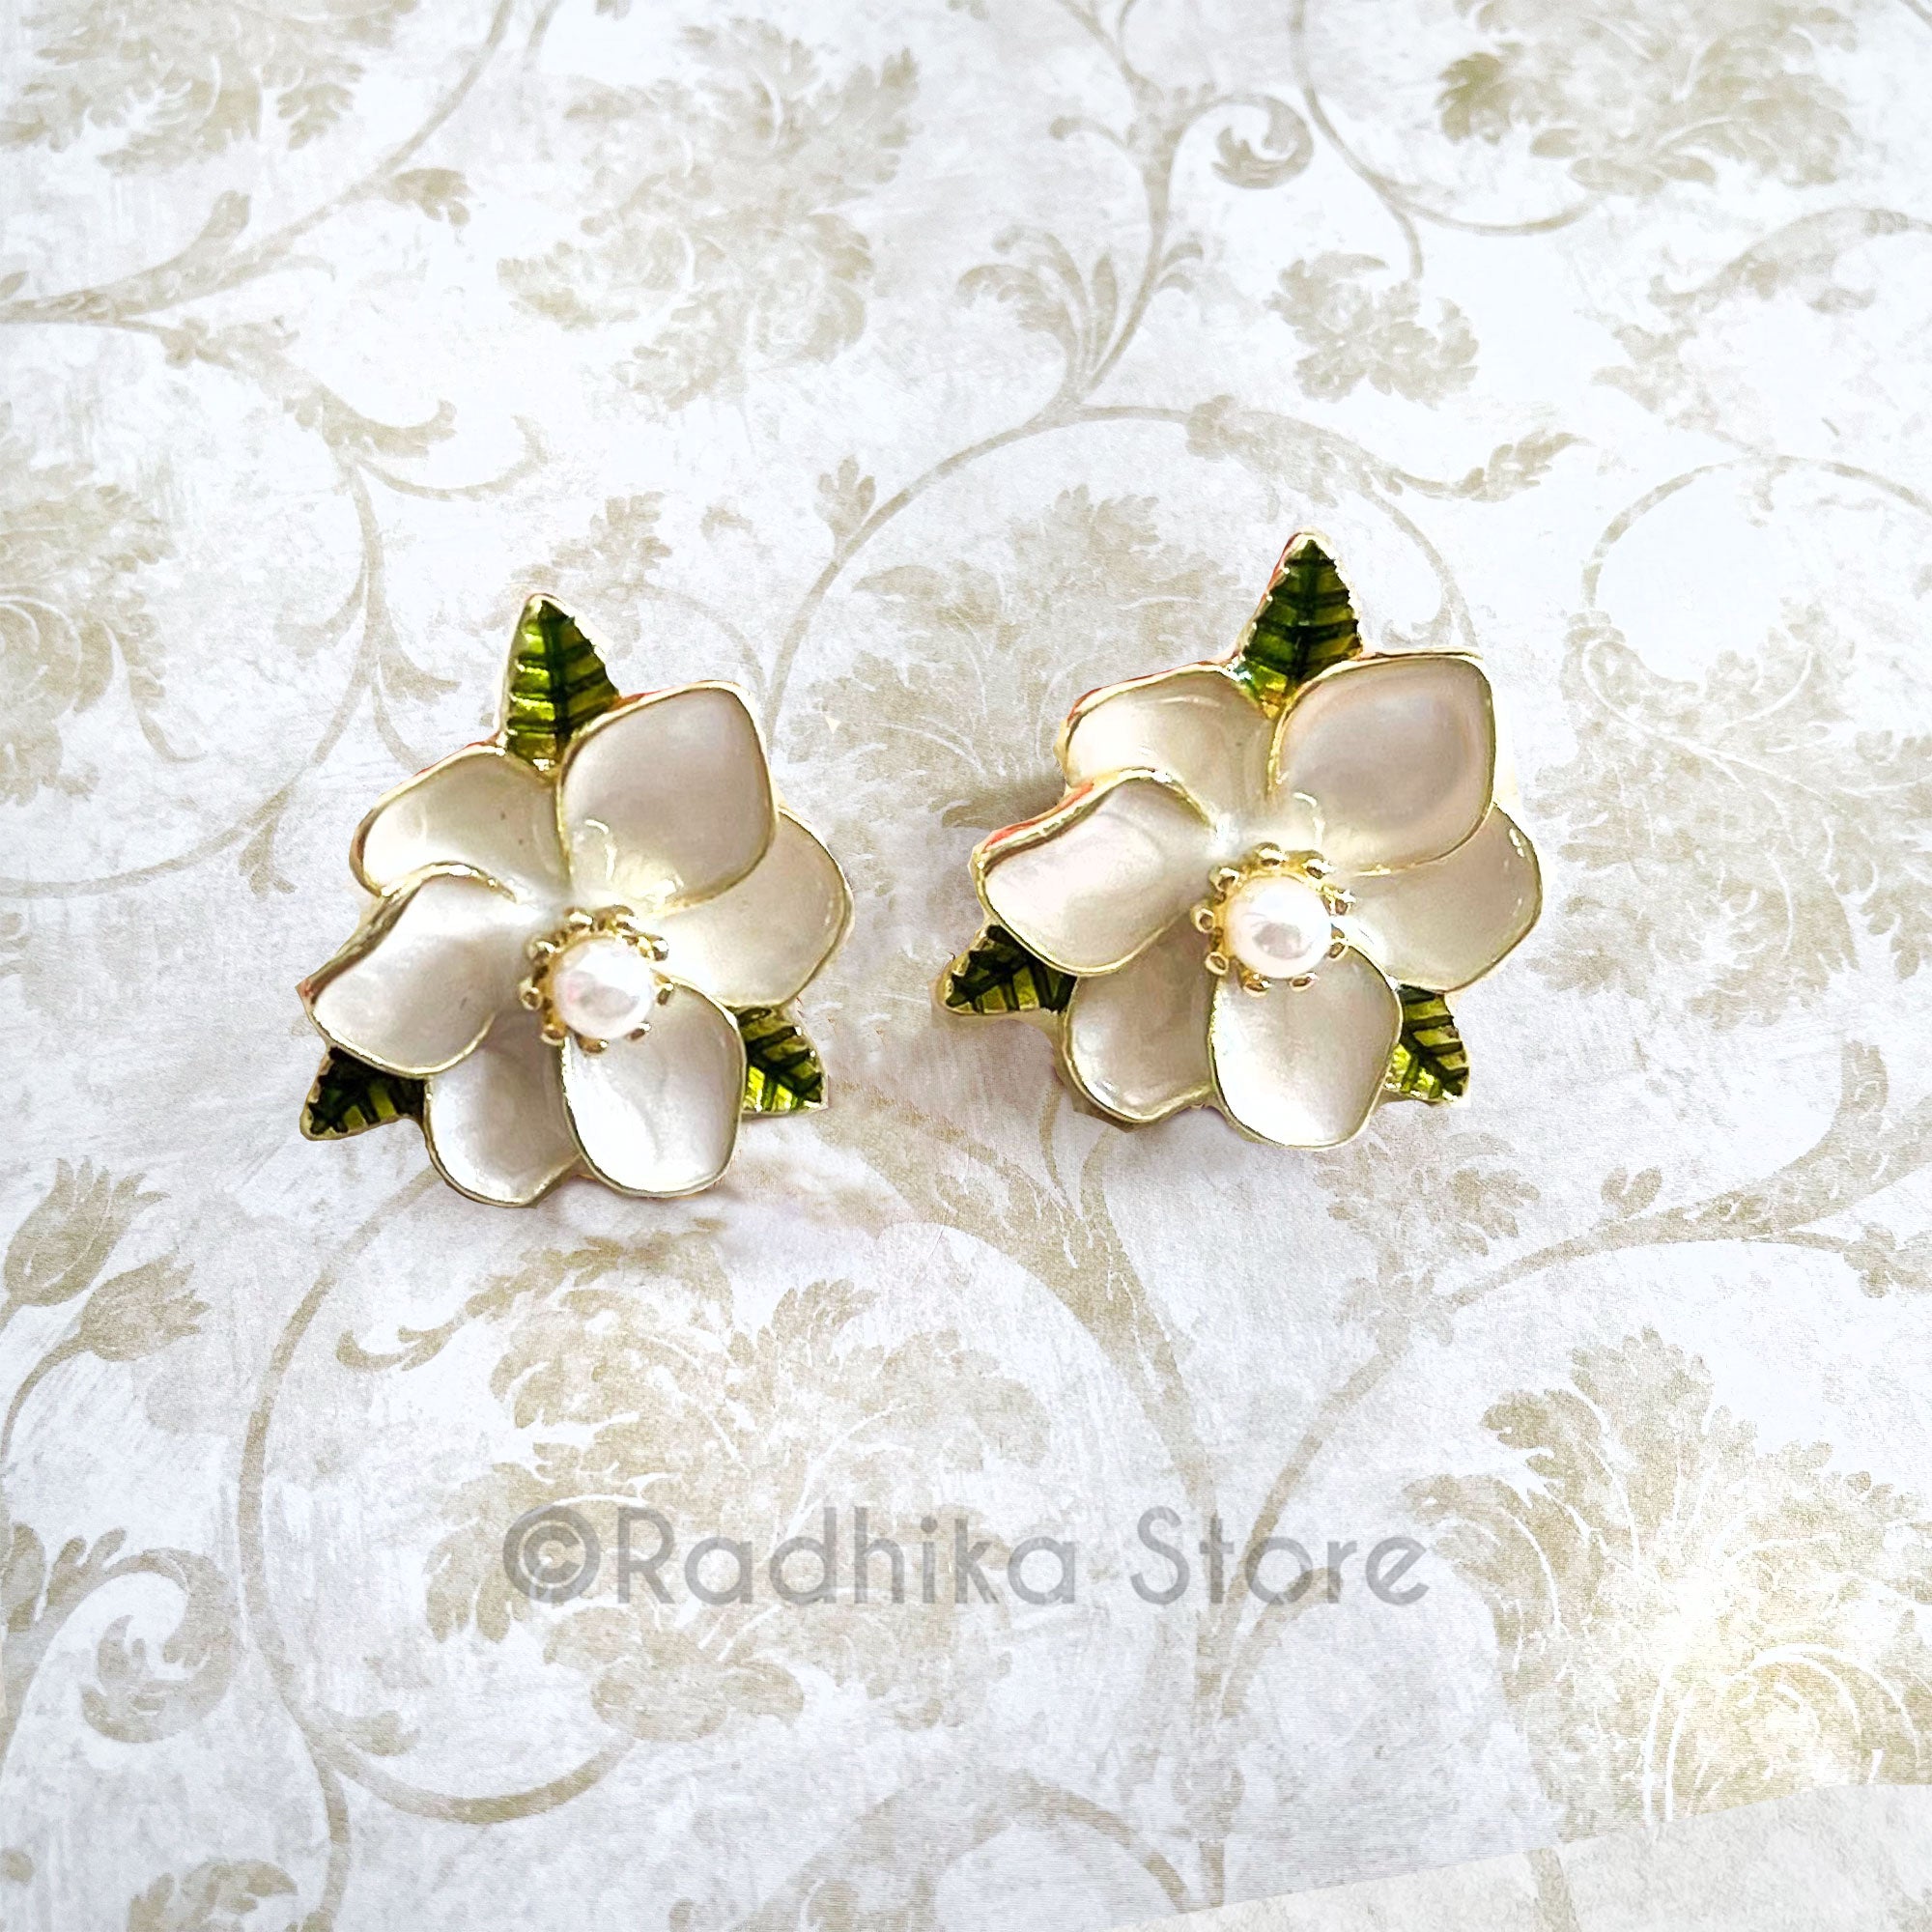 Little Magnolia Flower Earrings - 1 Inch